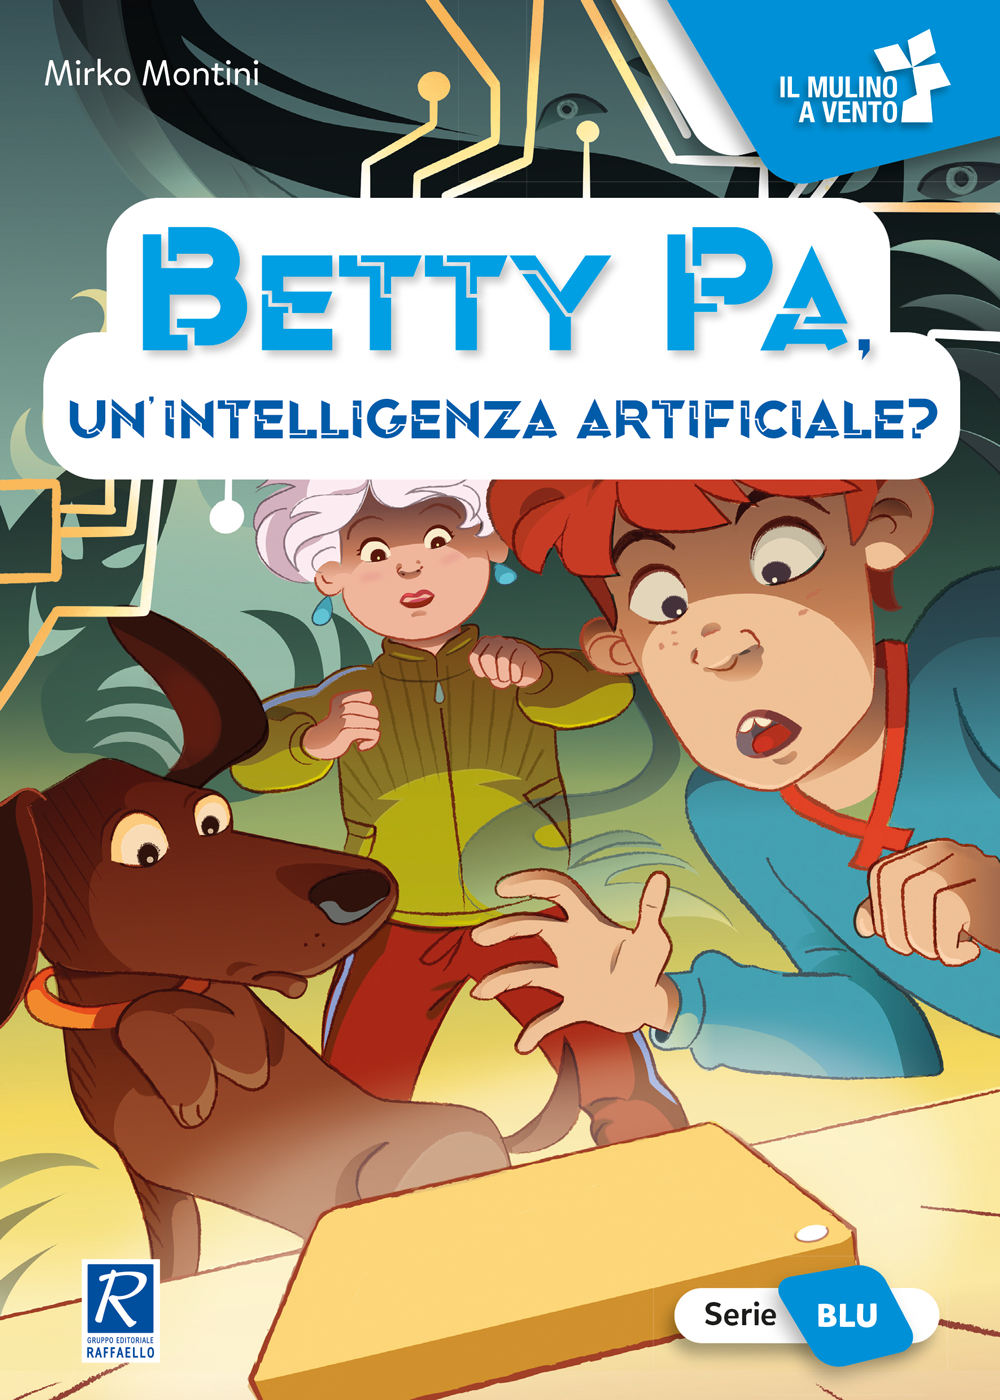 Betty pa, un'intelligenza artificiale? raffaello